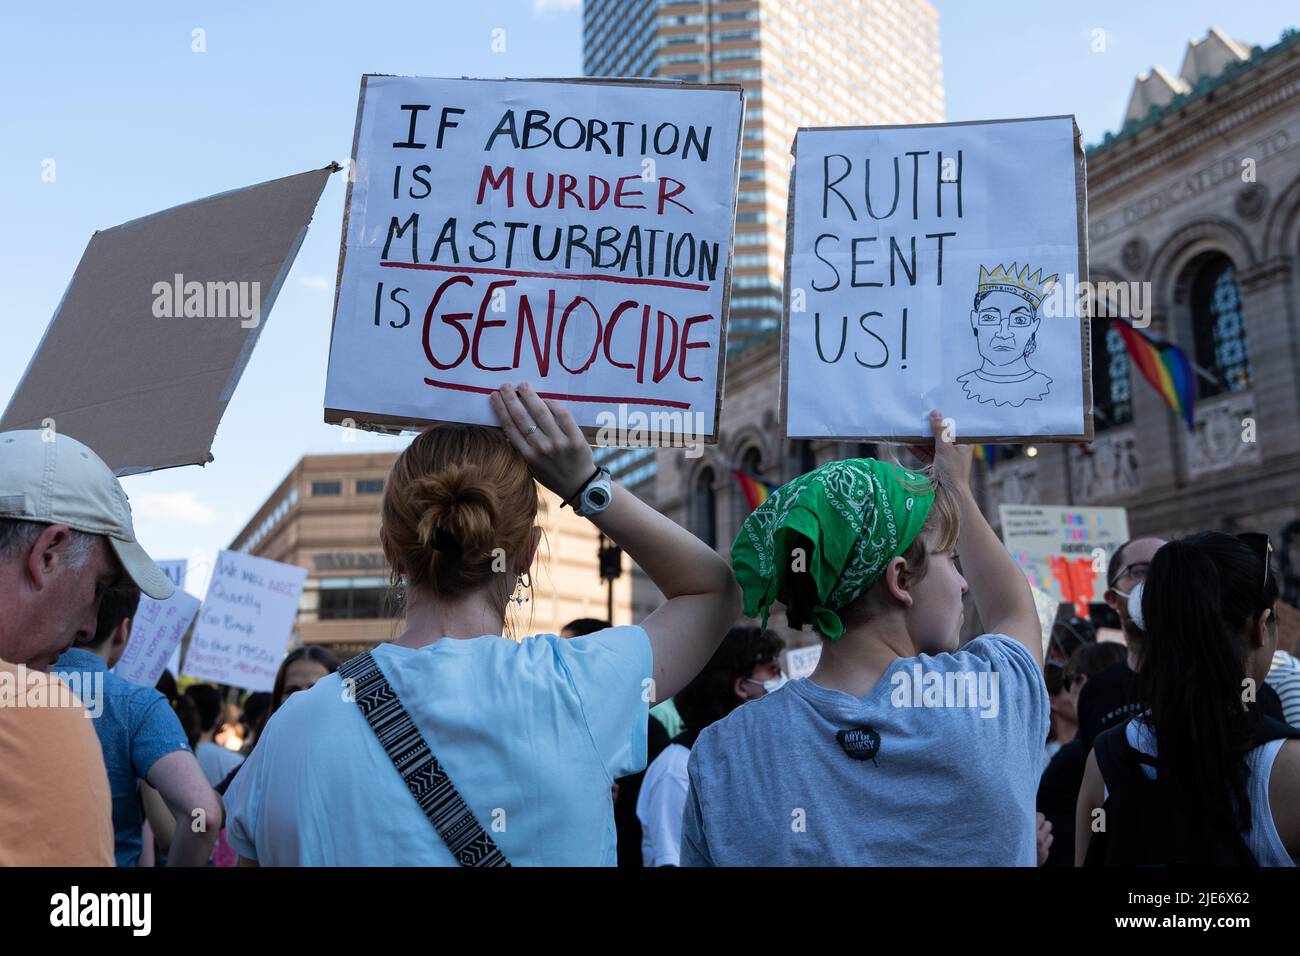 Boston, Stati Uniti. 24th giugno 2022. Due manifestanti sostengono cartelloni che dicono "se l'aborto è Murder Masturbazione è genocidio” e "Ruth ha mandato noi!” Durante la dimostrazione nel centro di Boston. A seguito dell'inversione di Roe V Wade da parte della Corte Suprema, si sono svolte manifestazioni a favore della scelta nelle città degli Stati Uniti. (Foto di Vincent Ricci/SOPA Images/Sipa USA) Credit: Sipa USA/Alamy Live News Foto Stock